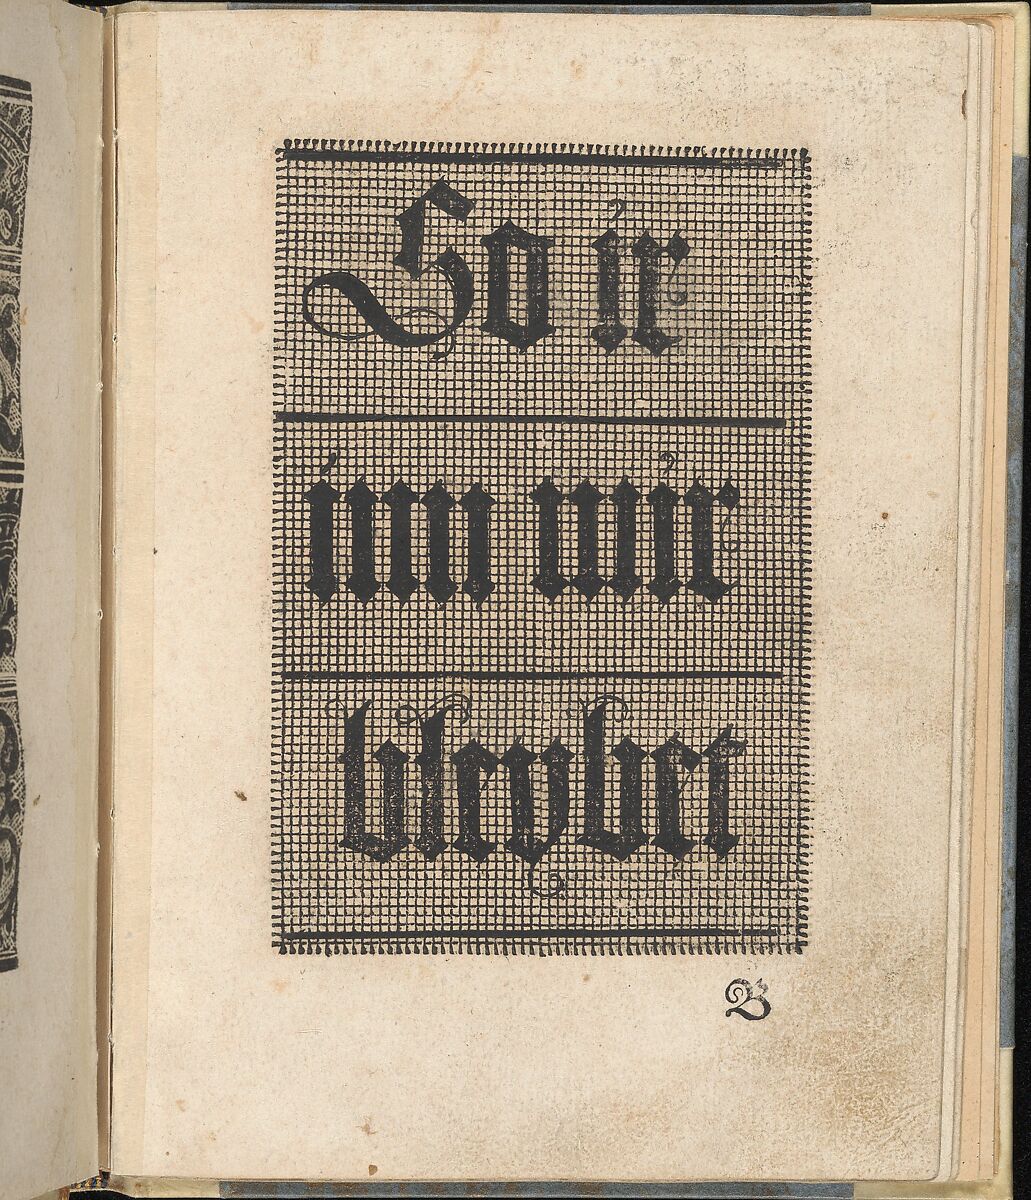 Ein ney Furmbüchlein, Page 3, recto, Johann Schönsperger the Younger (German, active 1510–30), Woodcut 